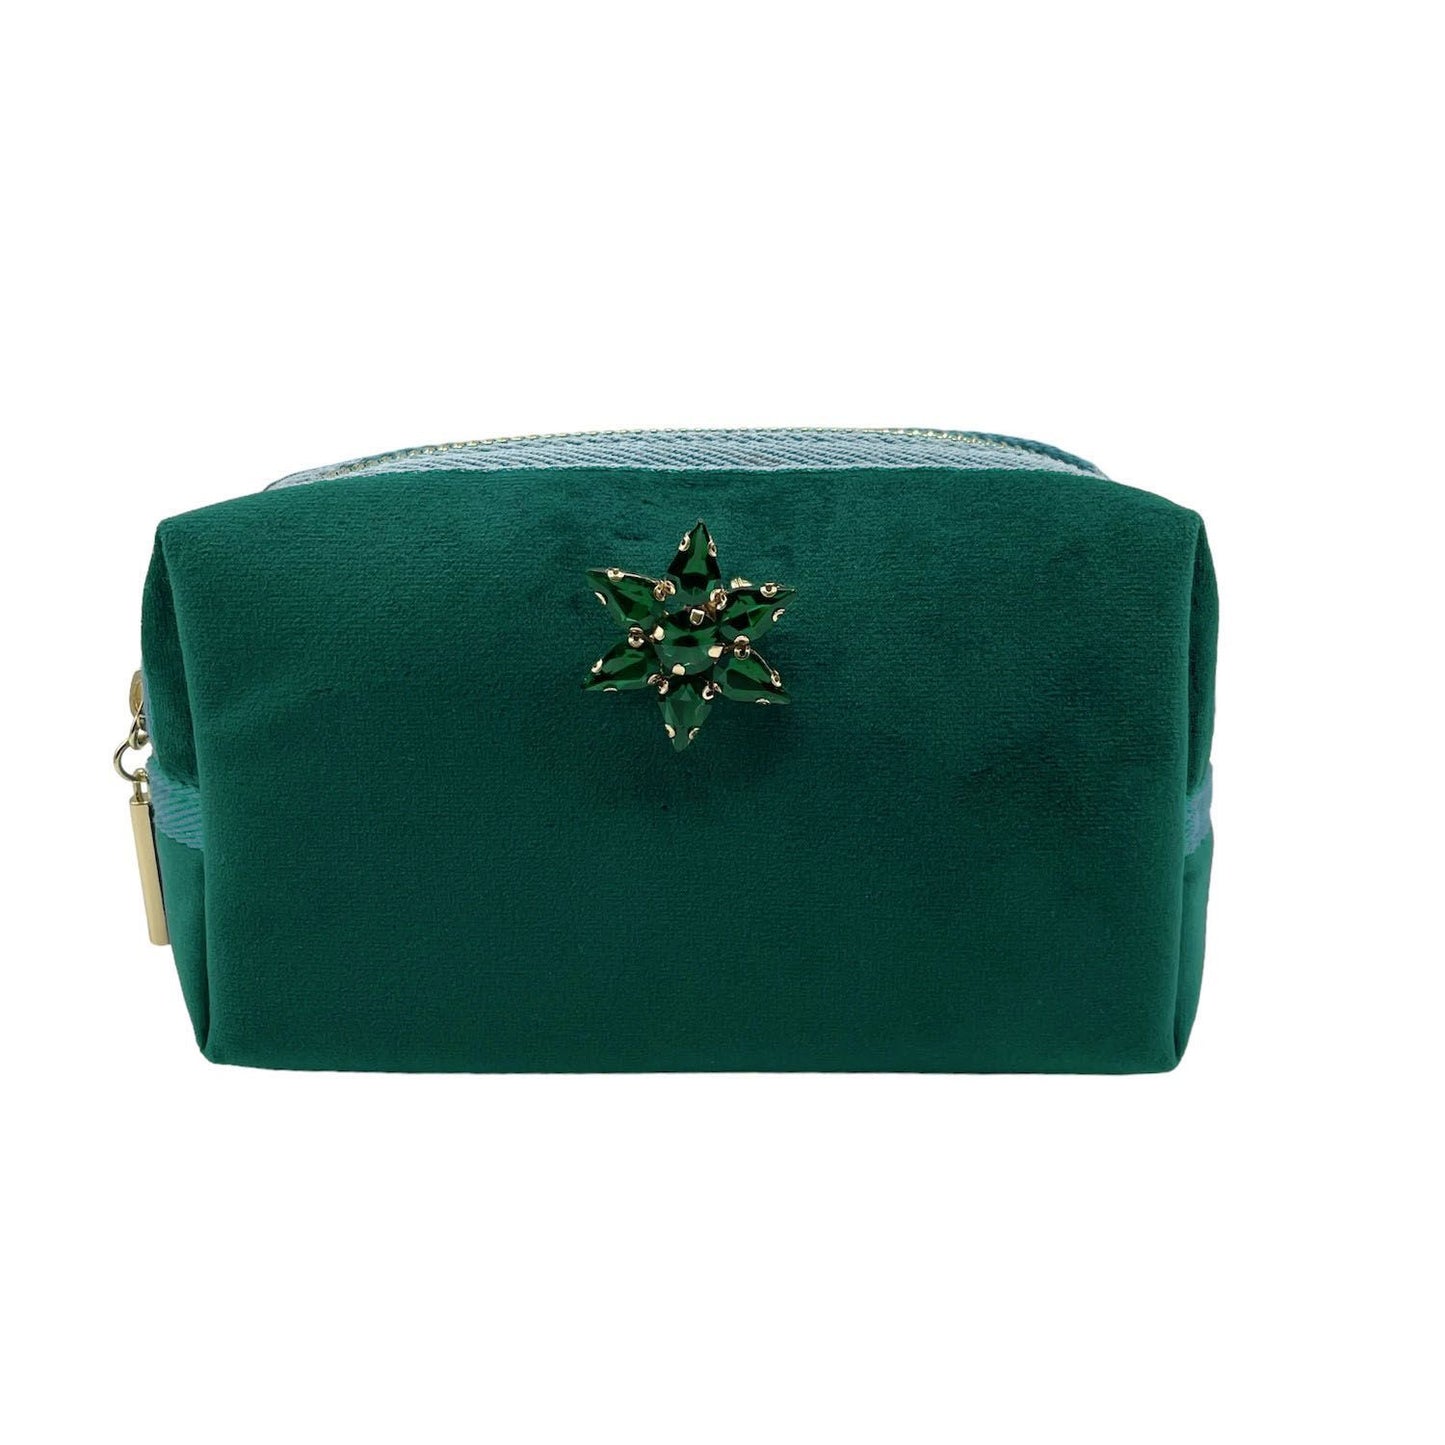 Green make-up bag & sparkle star pin - recycled velvet